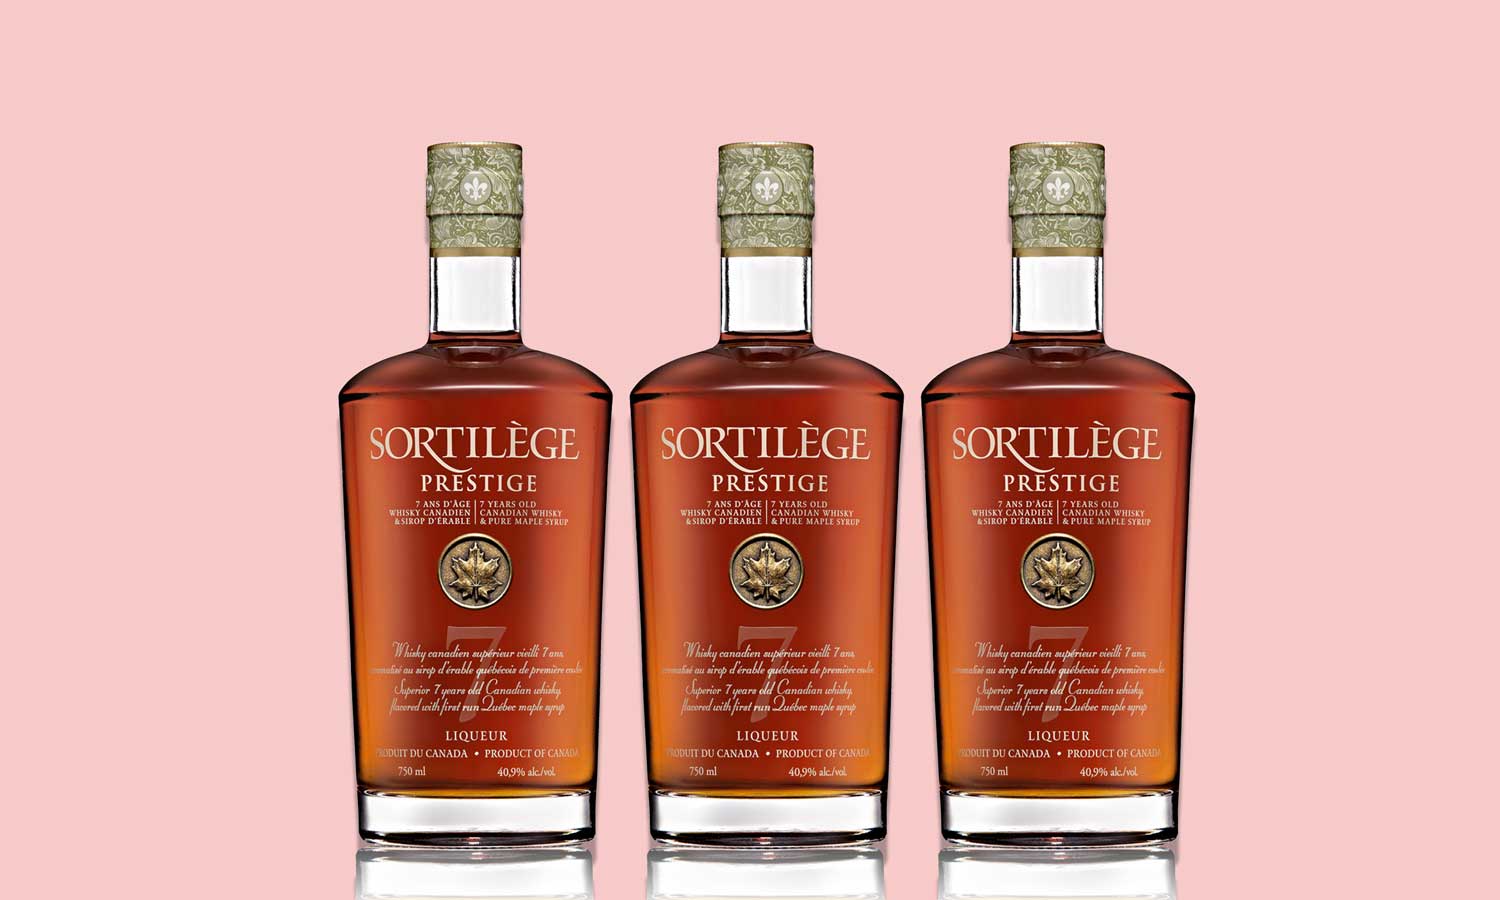 Sortilège Prestige, Liqueur de whisky à l'érable 40.9°, Québec - 75 cl